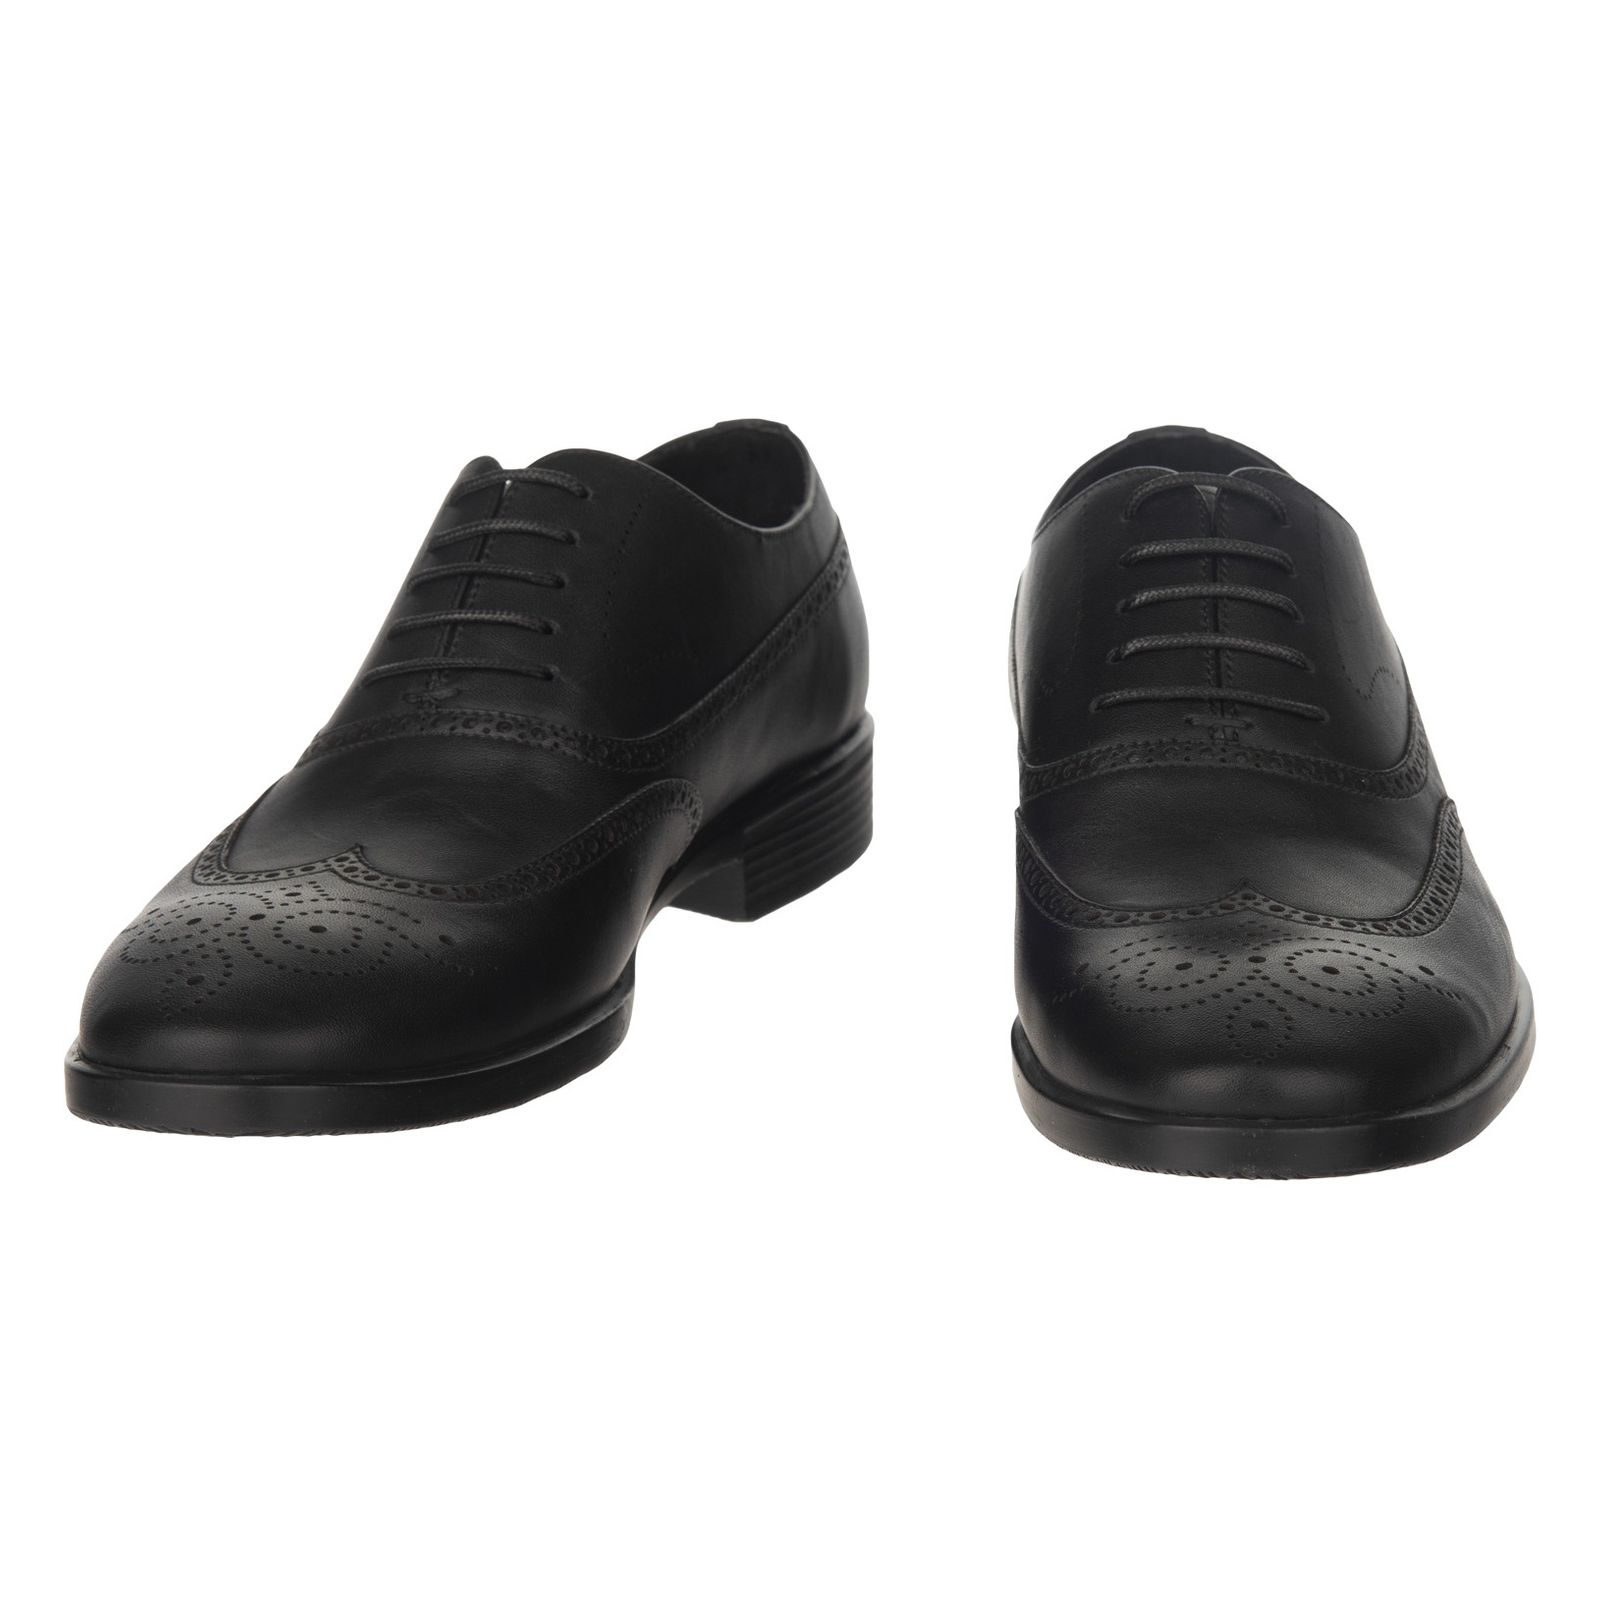 کفش مردانه گاندو مدل 501-99 - مشکی - 5